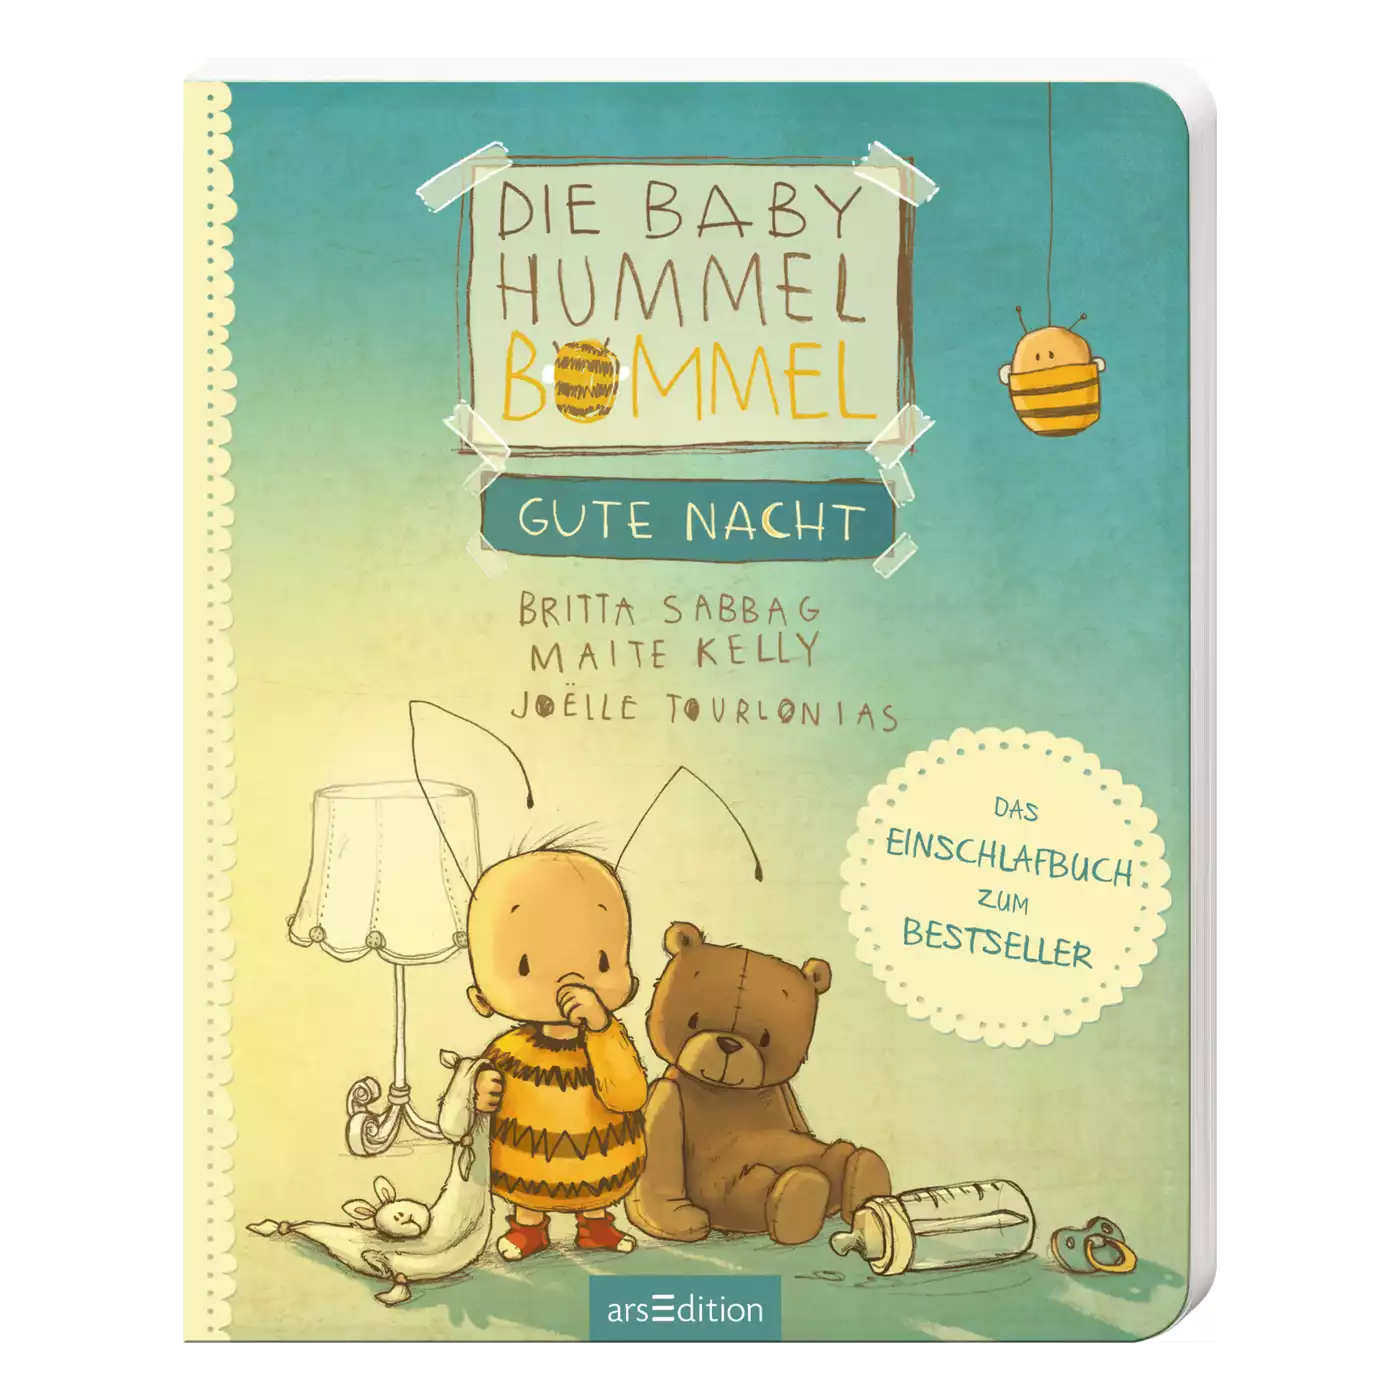 Die Baby Hummel Bommel - Gute Nacht arsEdition 2000574201702 3